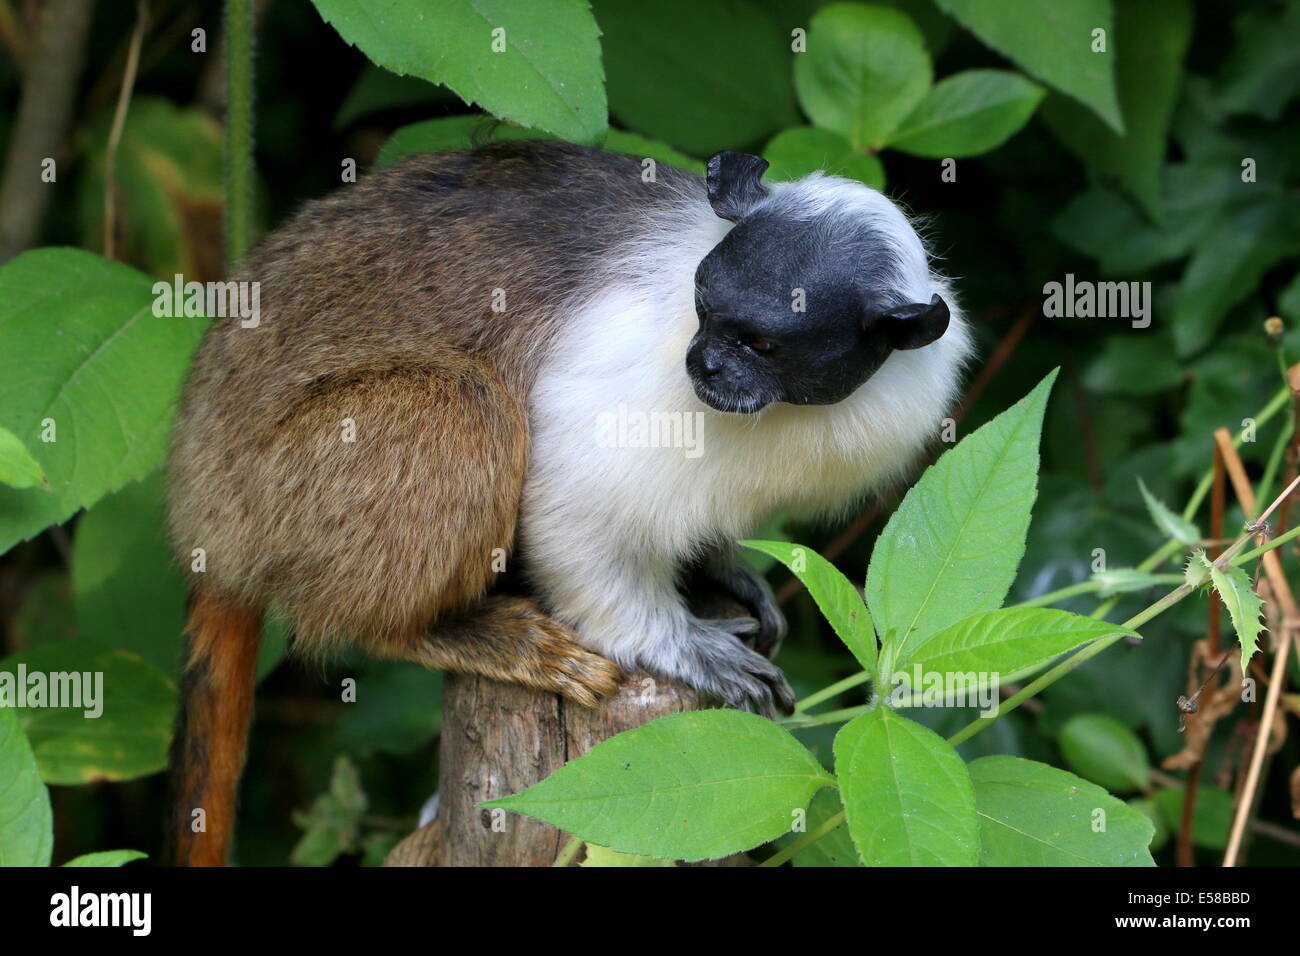 Pied tamarin monkey (Saguinus bicolor), en voie de disparition les espèces de primates de la forêt amazonienne du Brésil Banque D'Images